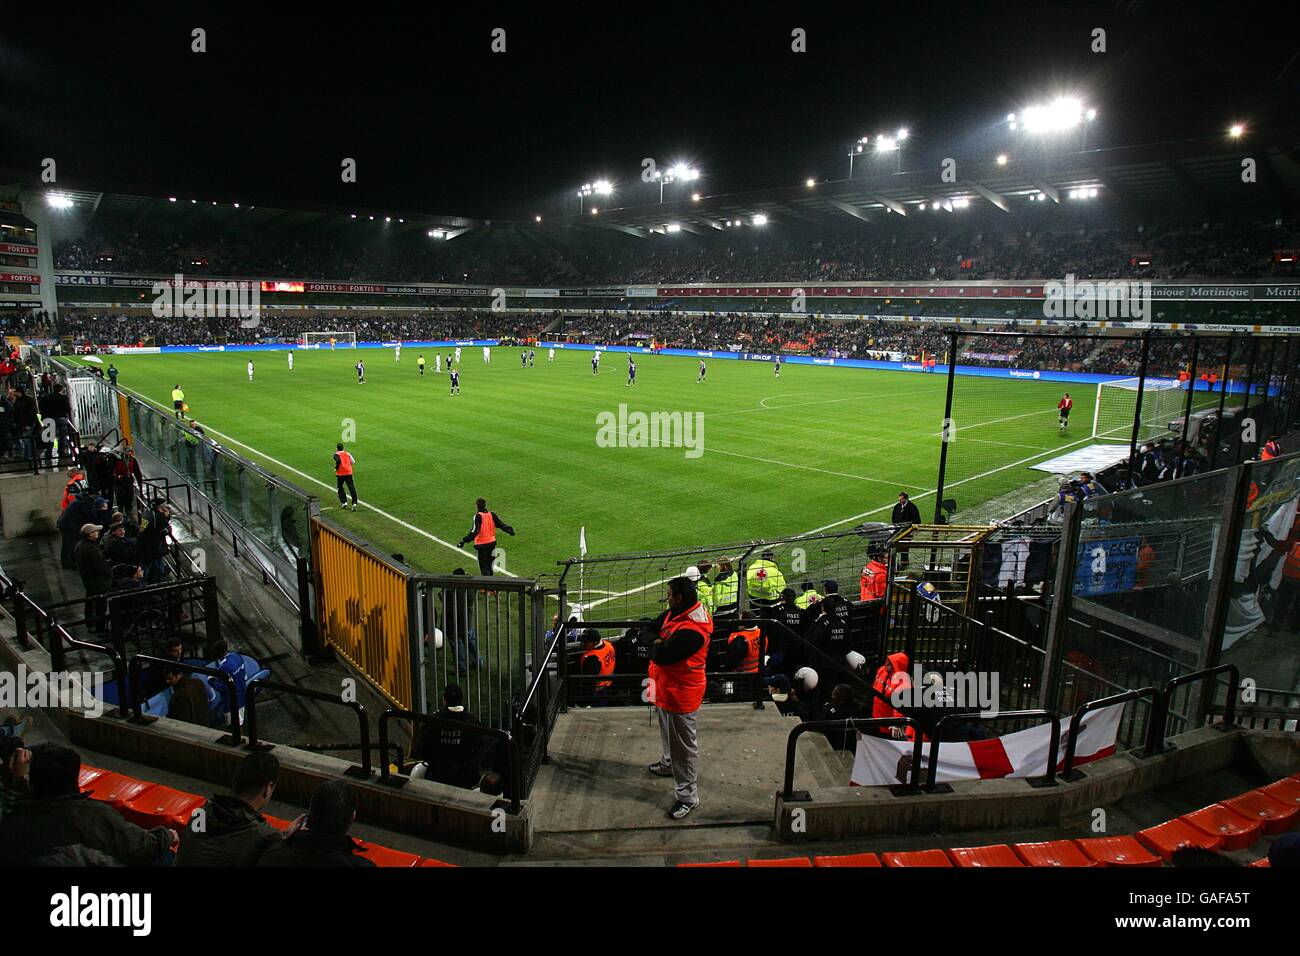 Calcio - Coppa UEFA - Gruppo G - Anderlecht v Tottenham Hotspur - Constant Vanden Stockstadion Foto Stock